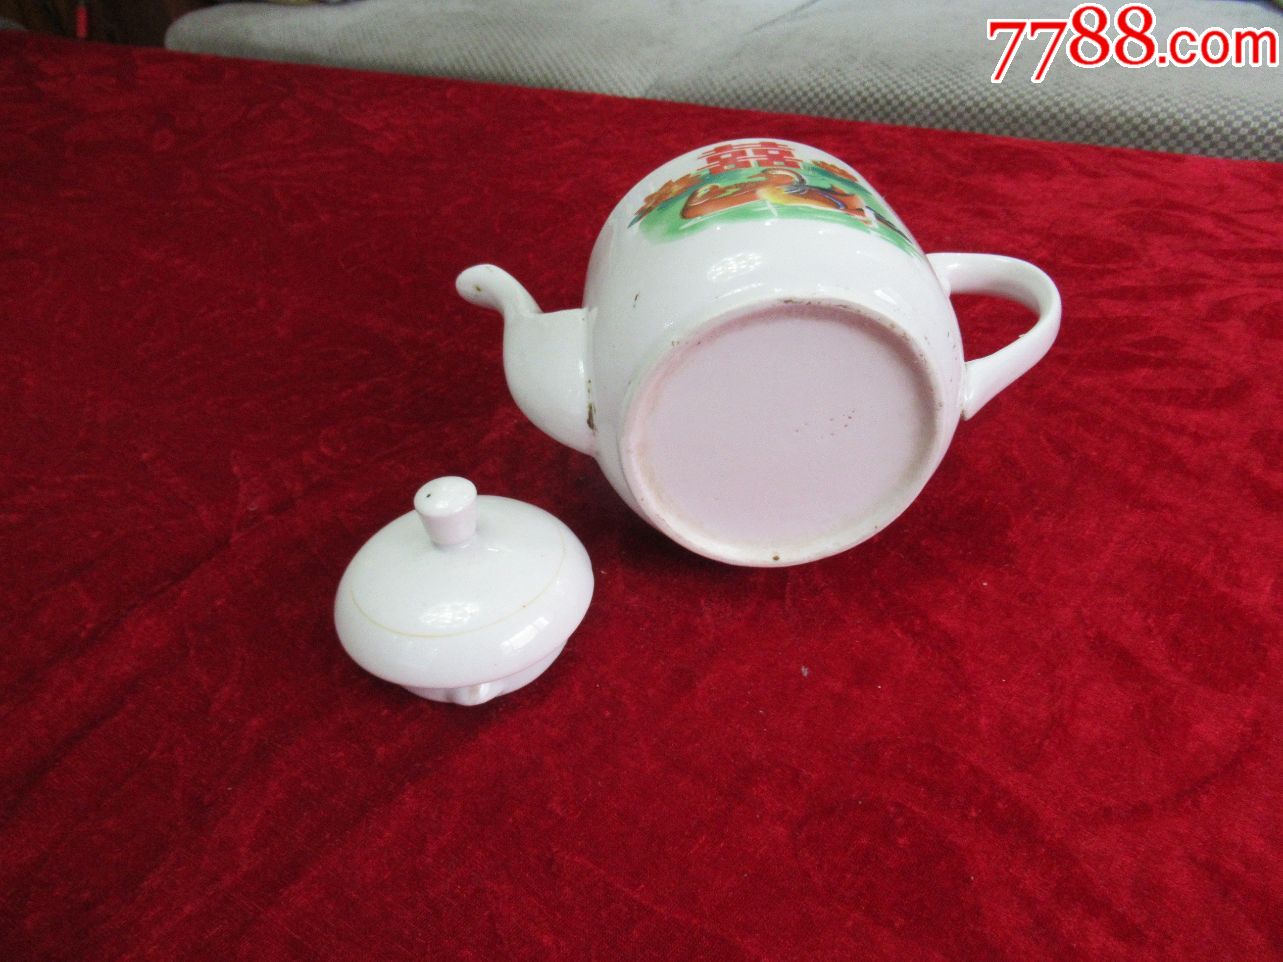 【茶壶收藏】八十年代双喜荷花鸳鸯图茶壶(完